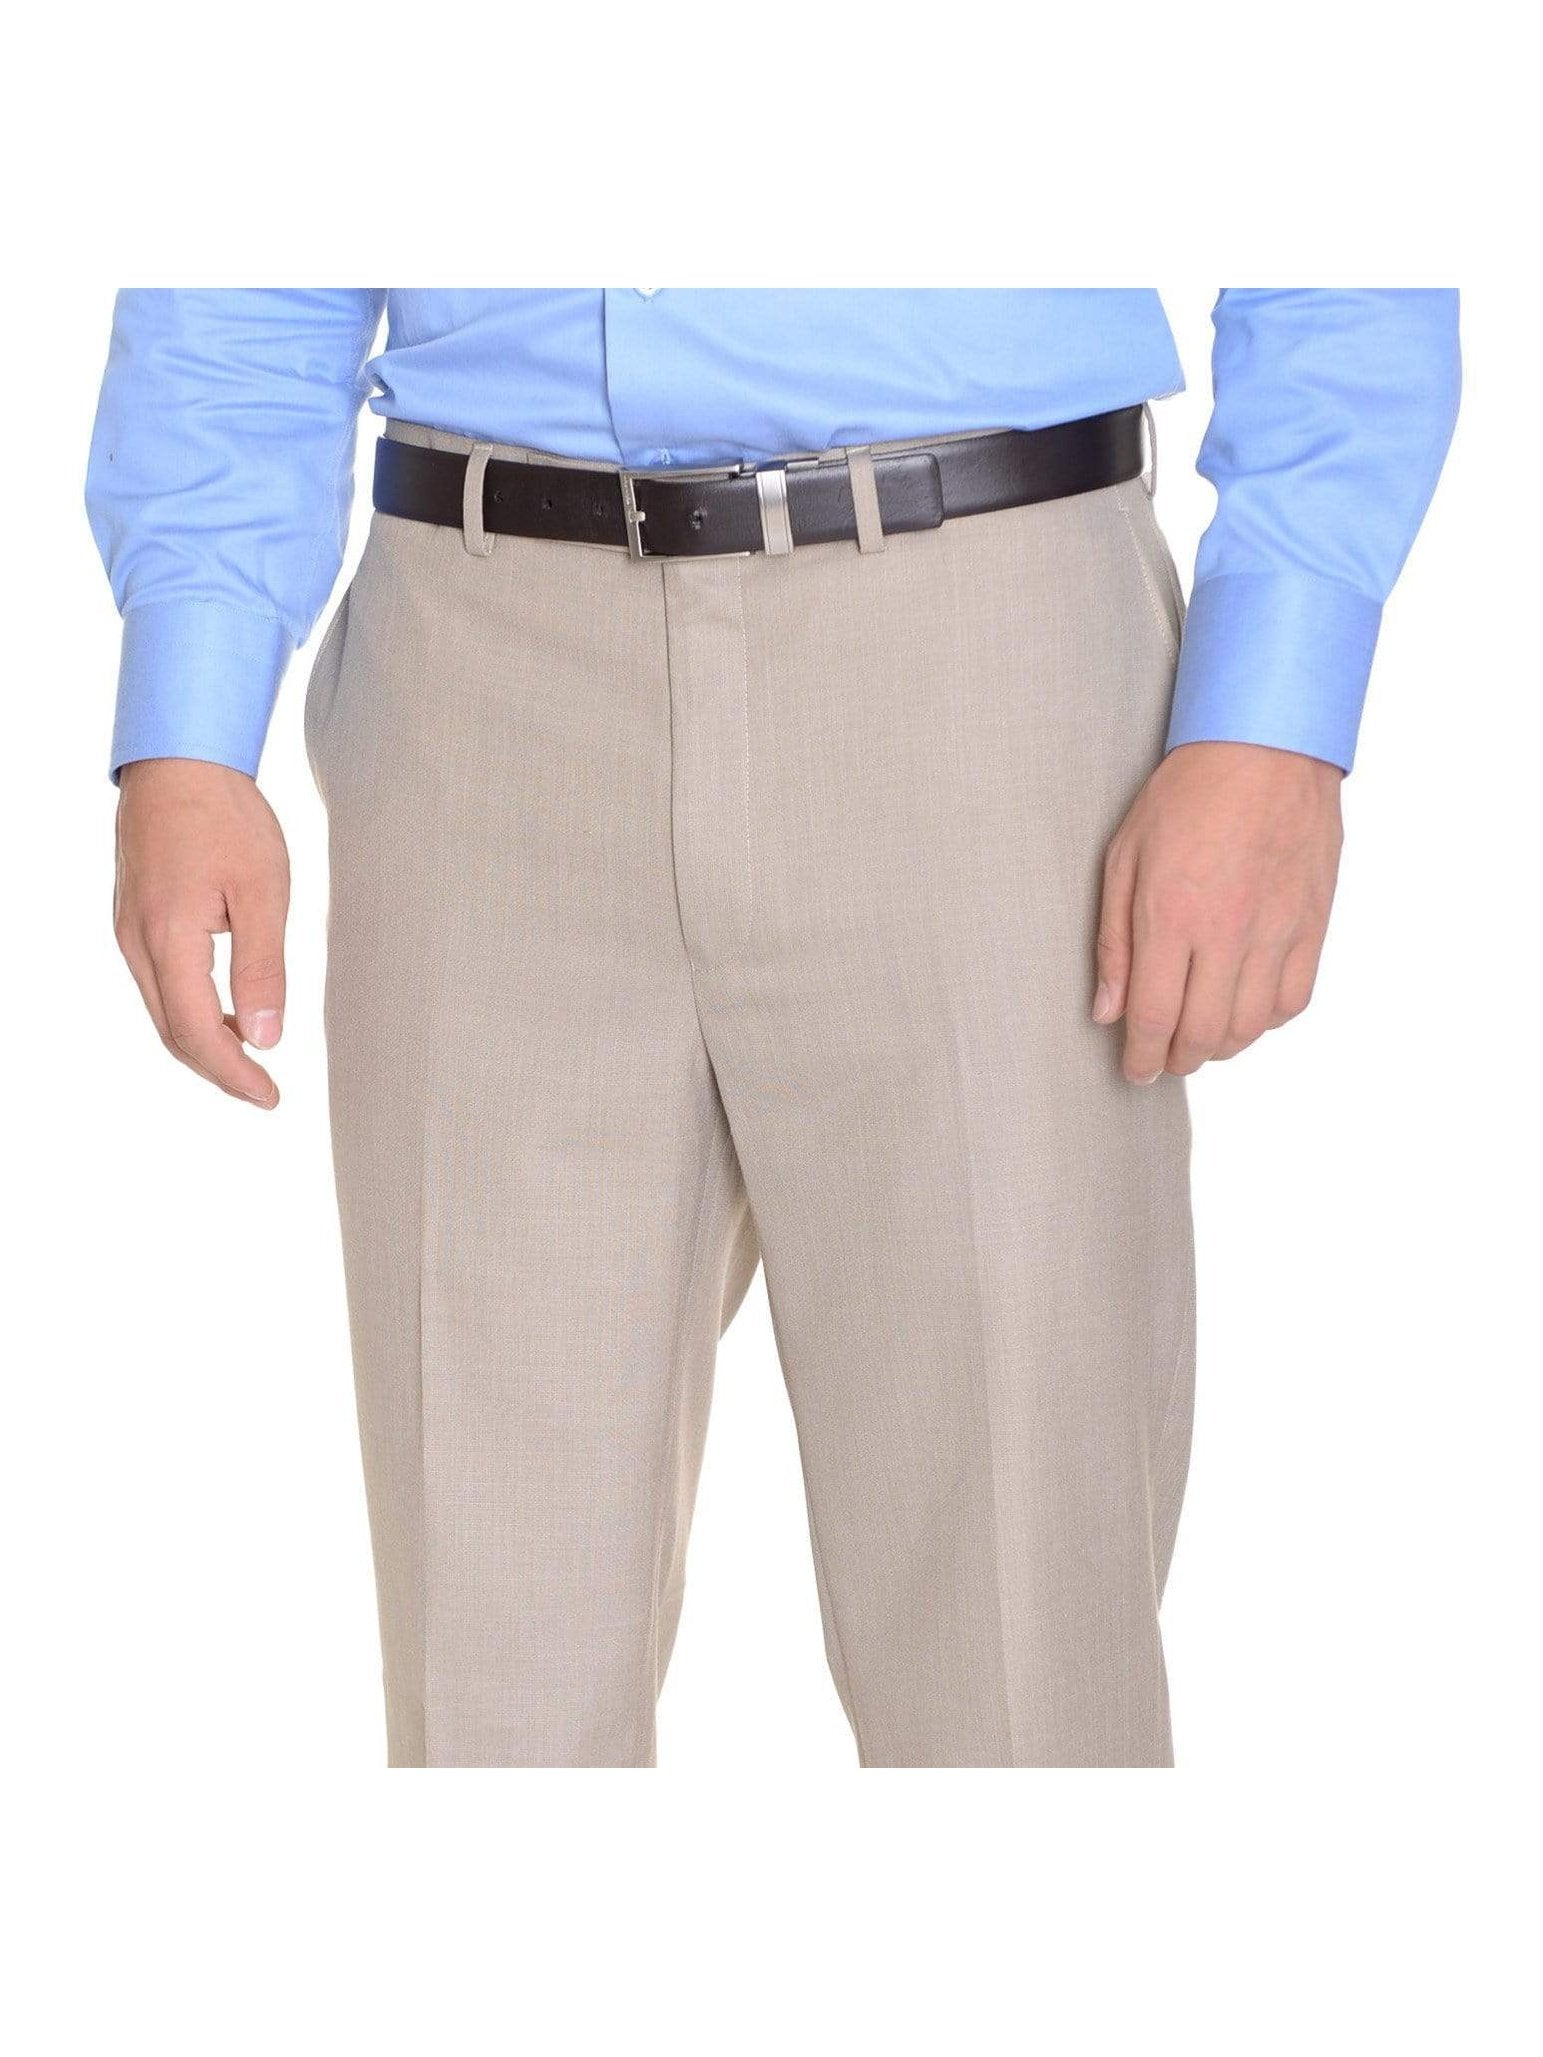 Calvin Klein Slim Fit Charcoal Gray Plaid Flat Front Washable Dress Pants |  The Suit Depot